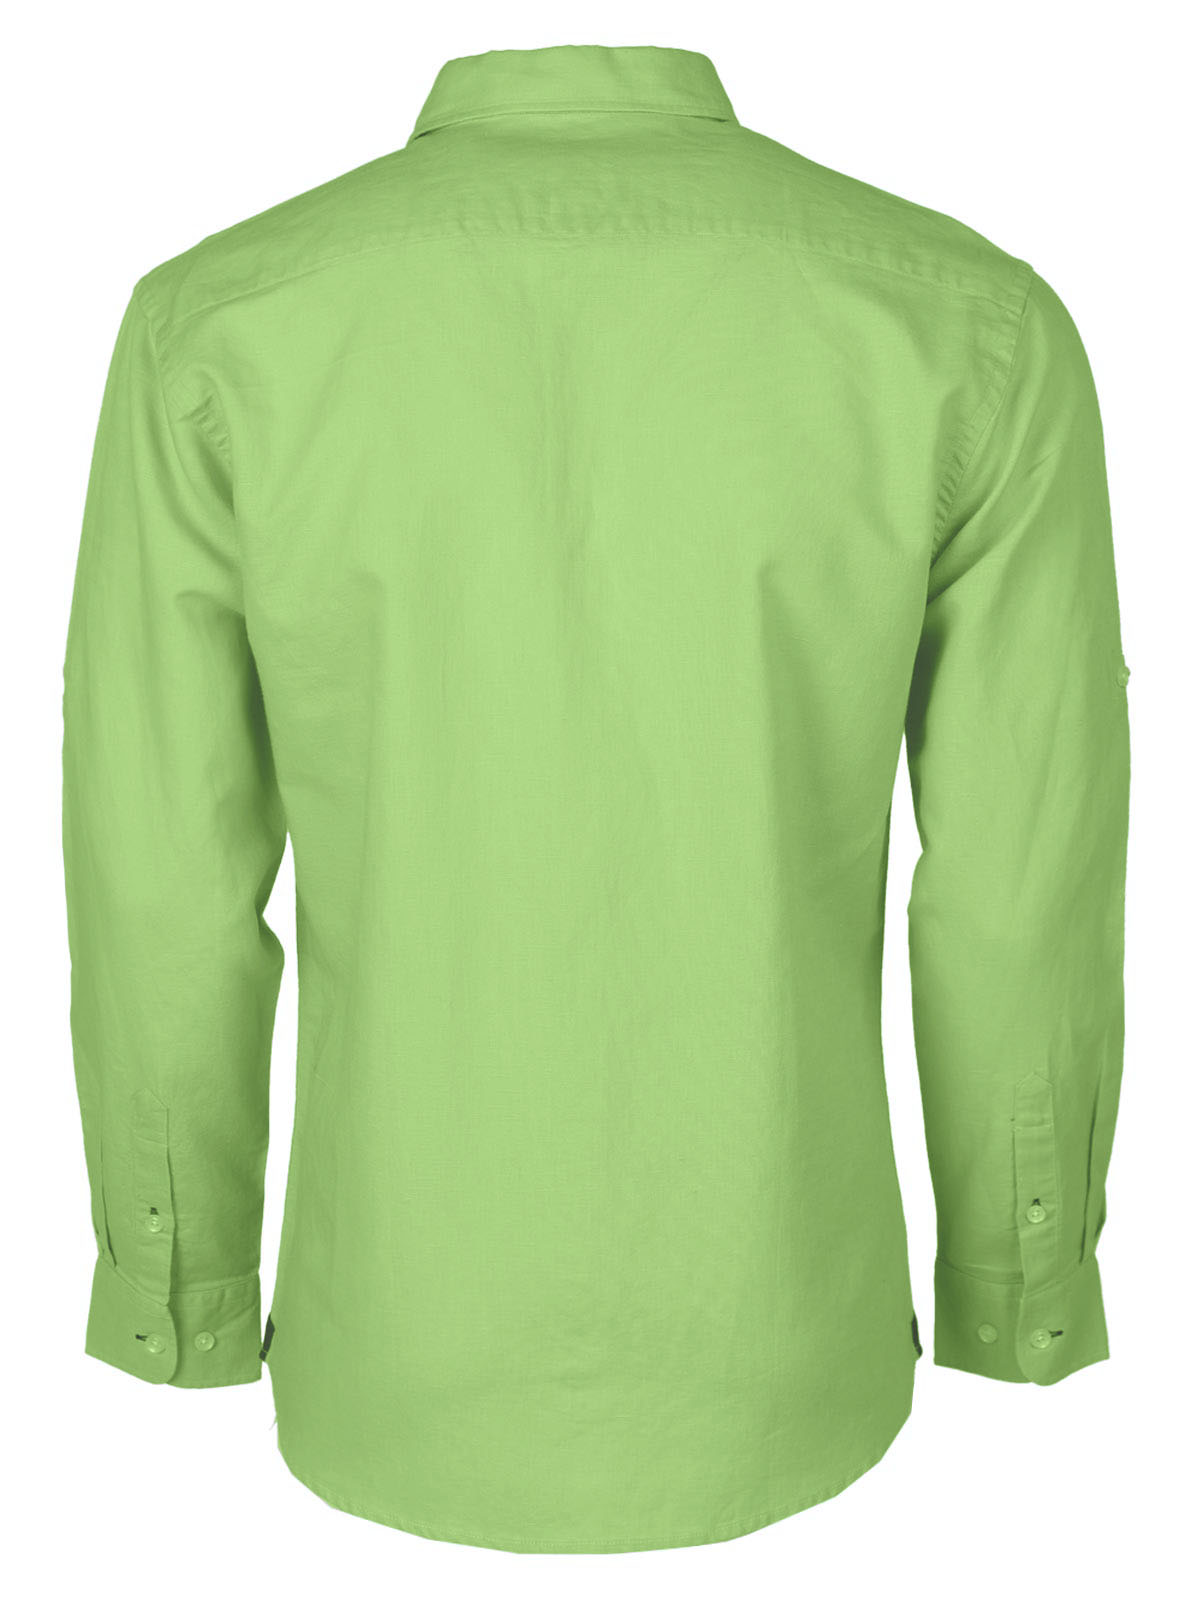 Linen shirt in mint green - 21595 € 55.12 img2